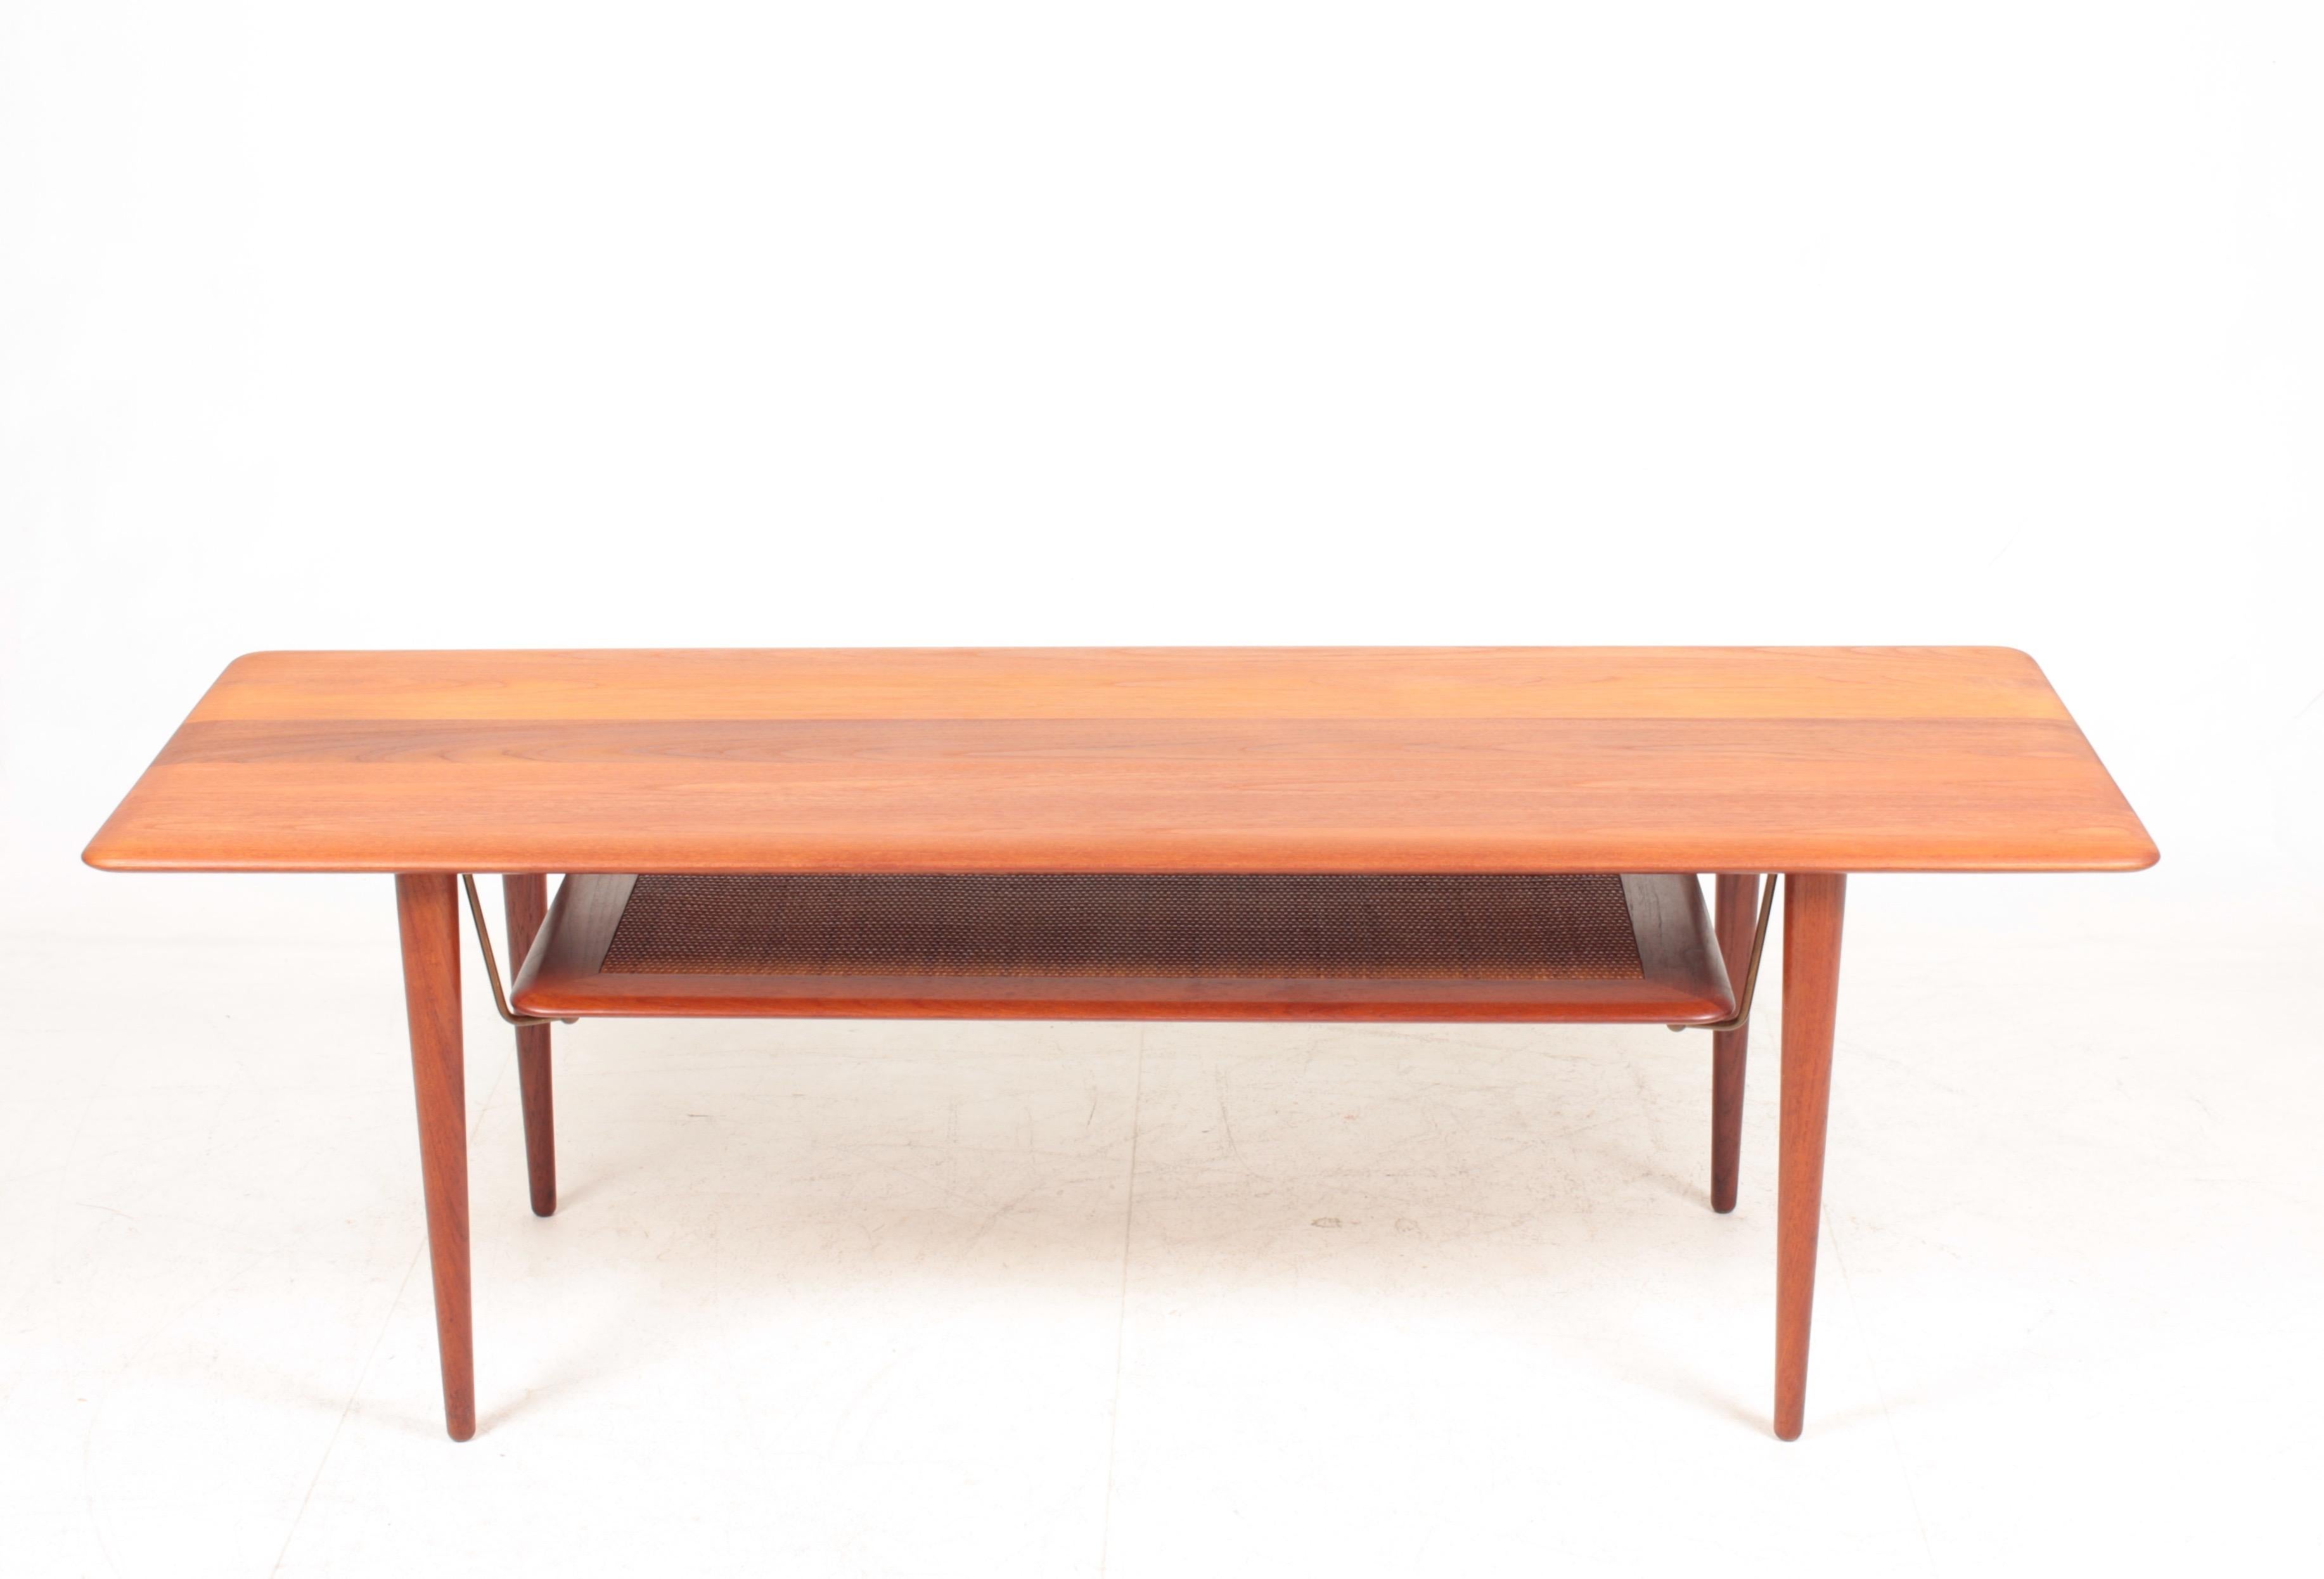 Niedriger Tisch aus massivem Teakholz und Schilfrohr. Entworfen von Peter Hvidt und Orla Mølgaard für France & Son in den 1960er Jahren. Hergestellt in Dänemark. Toller Originalzustand.